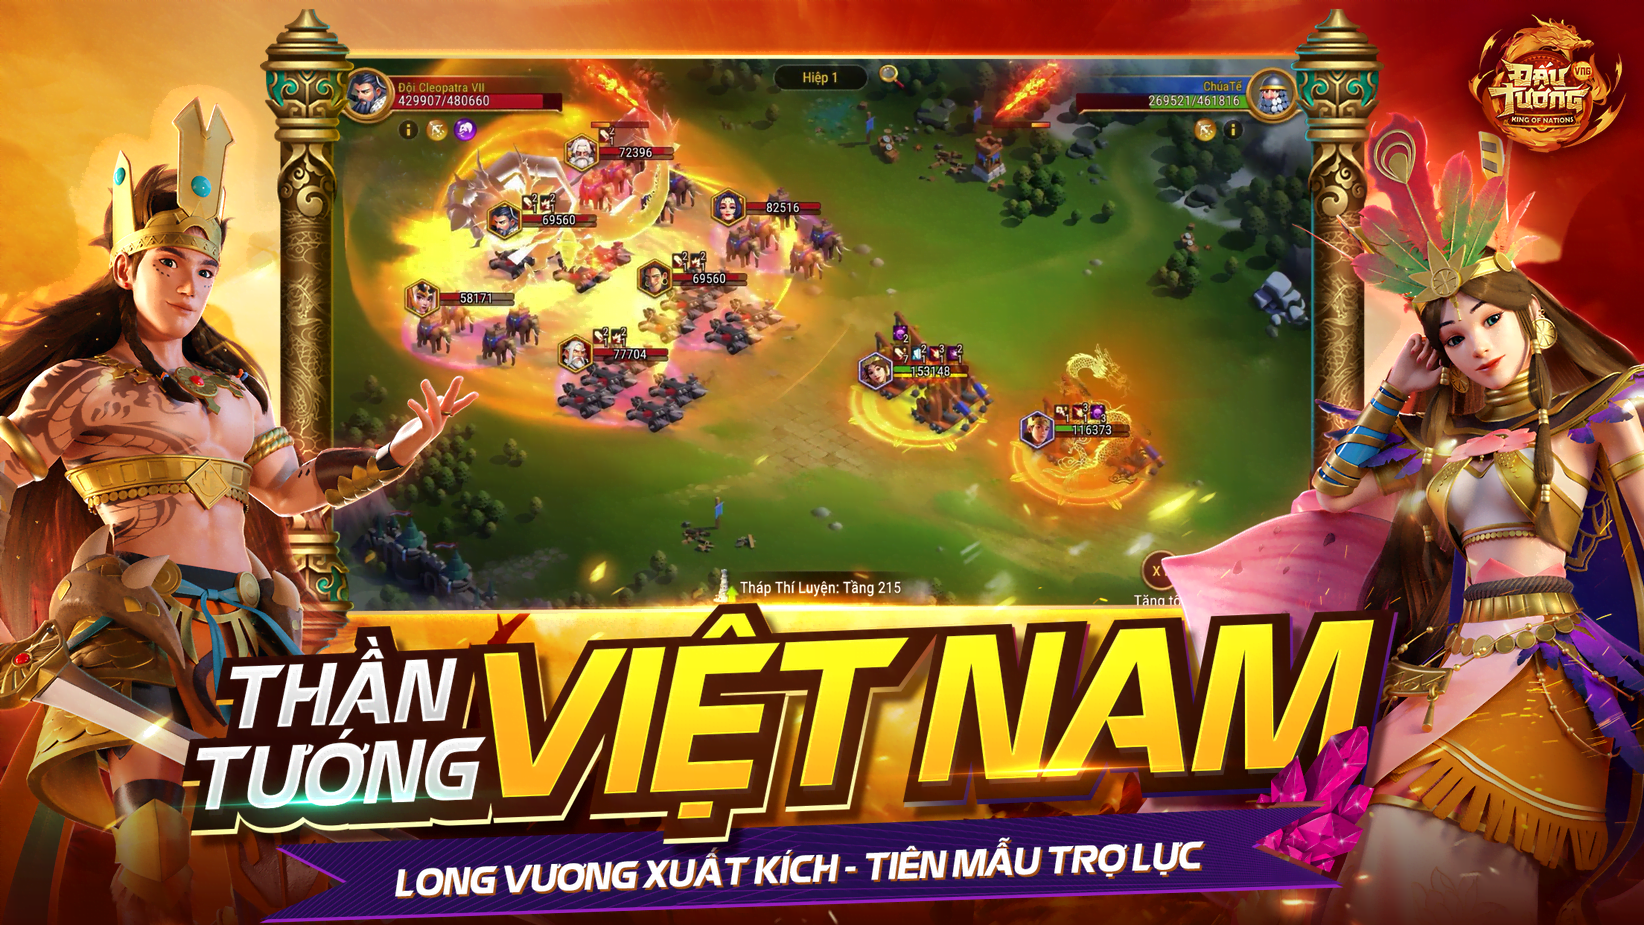 KON Than Tuong Viet Nam MMOSITE - Thông tin công nghệ, review, thủ thuật PC, gaming